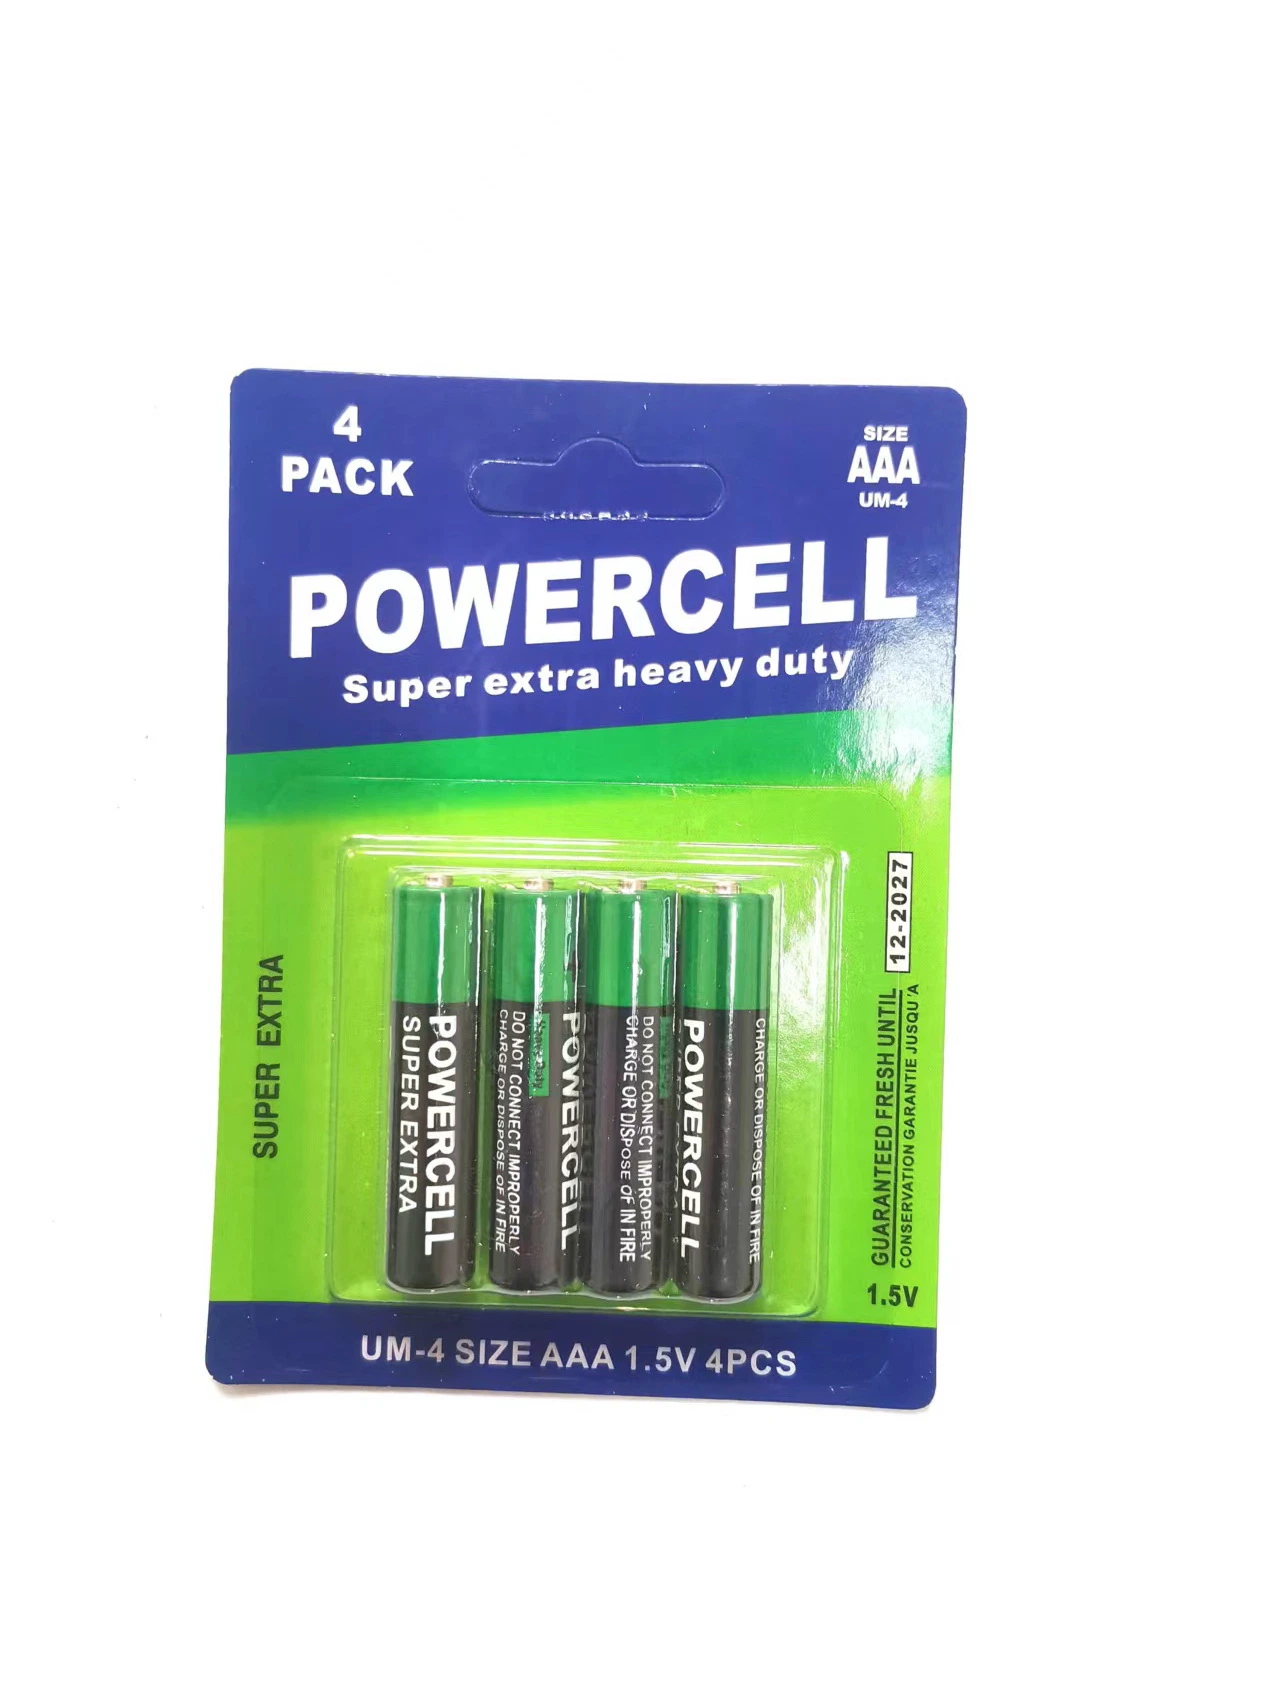 OEM-Batterie-Zelle Primärbatterie 1,5V R6 um-3 für Verbraucher Batterie Für Elektronik/Elektrowerkzeug